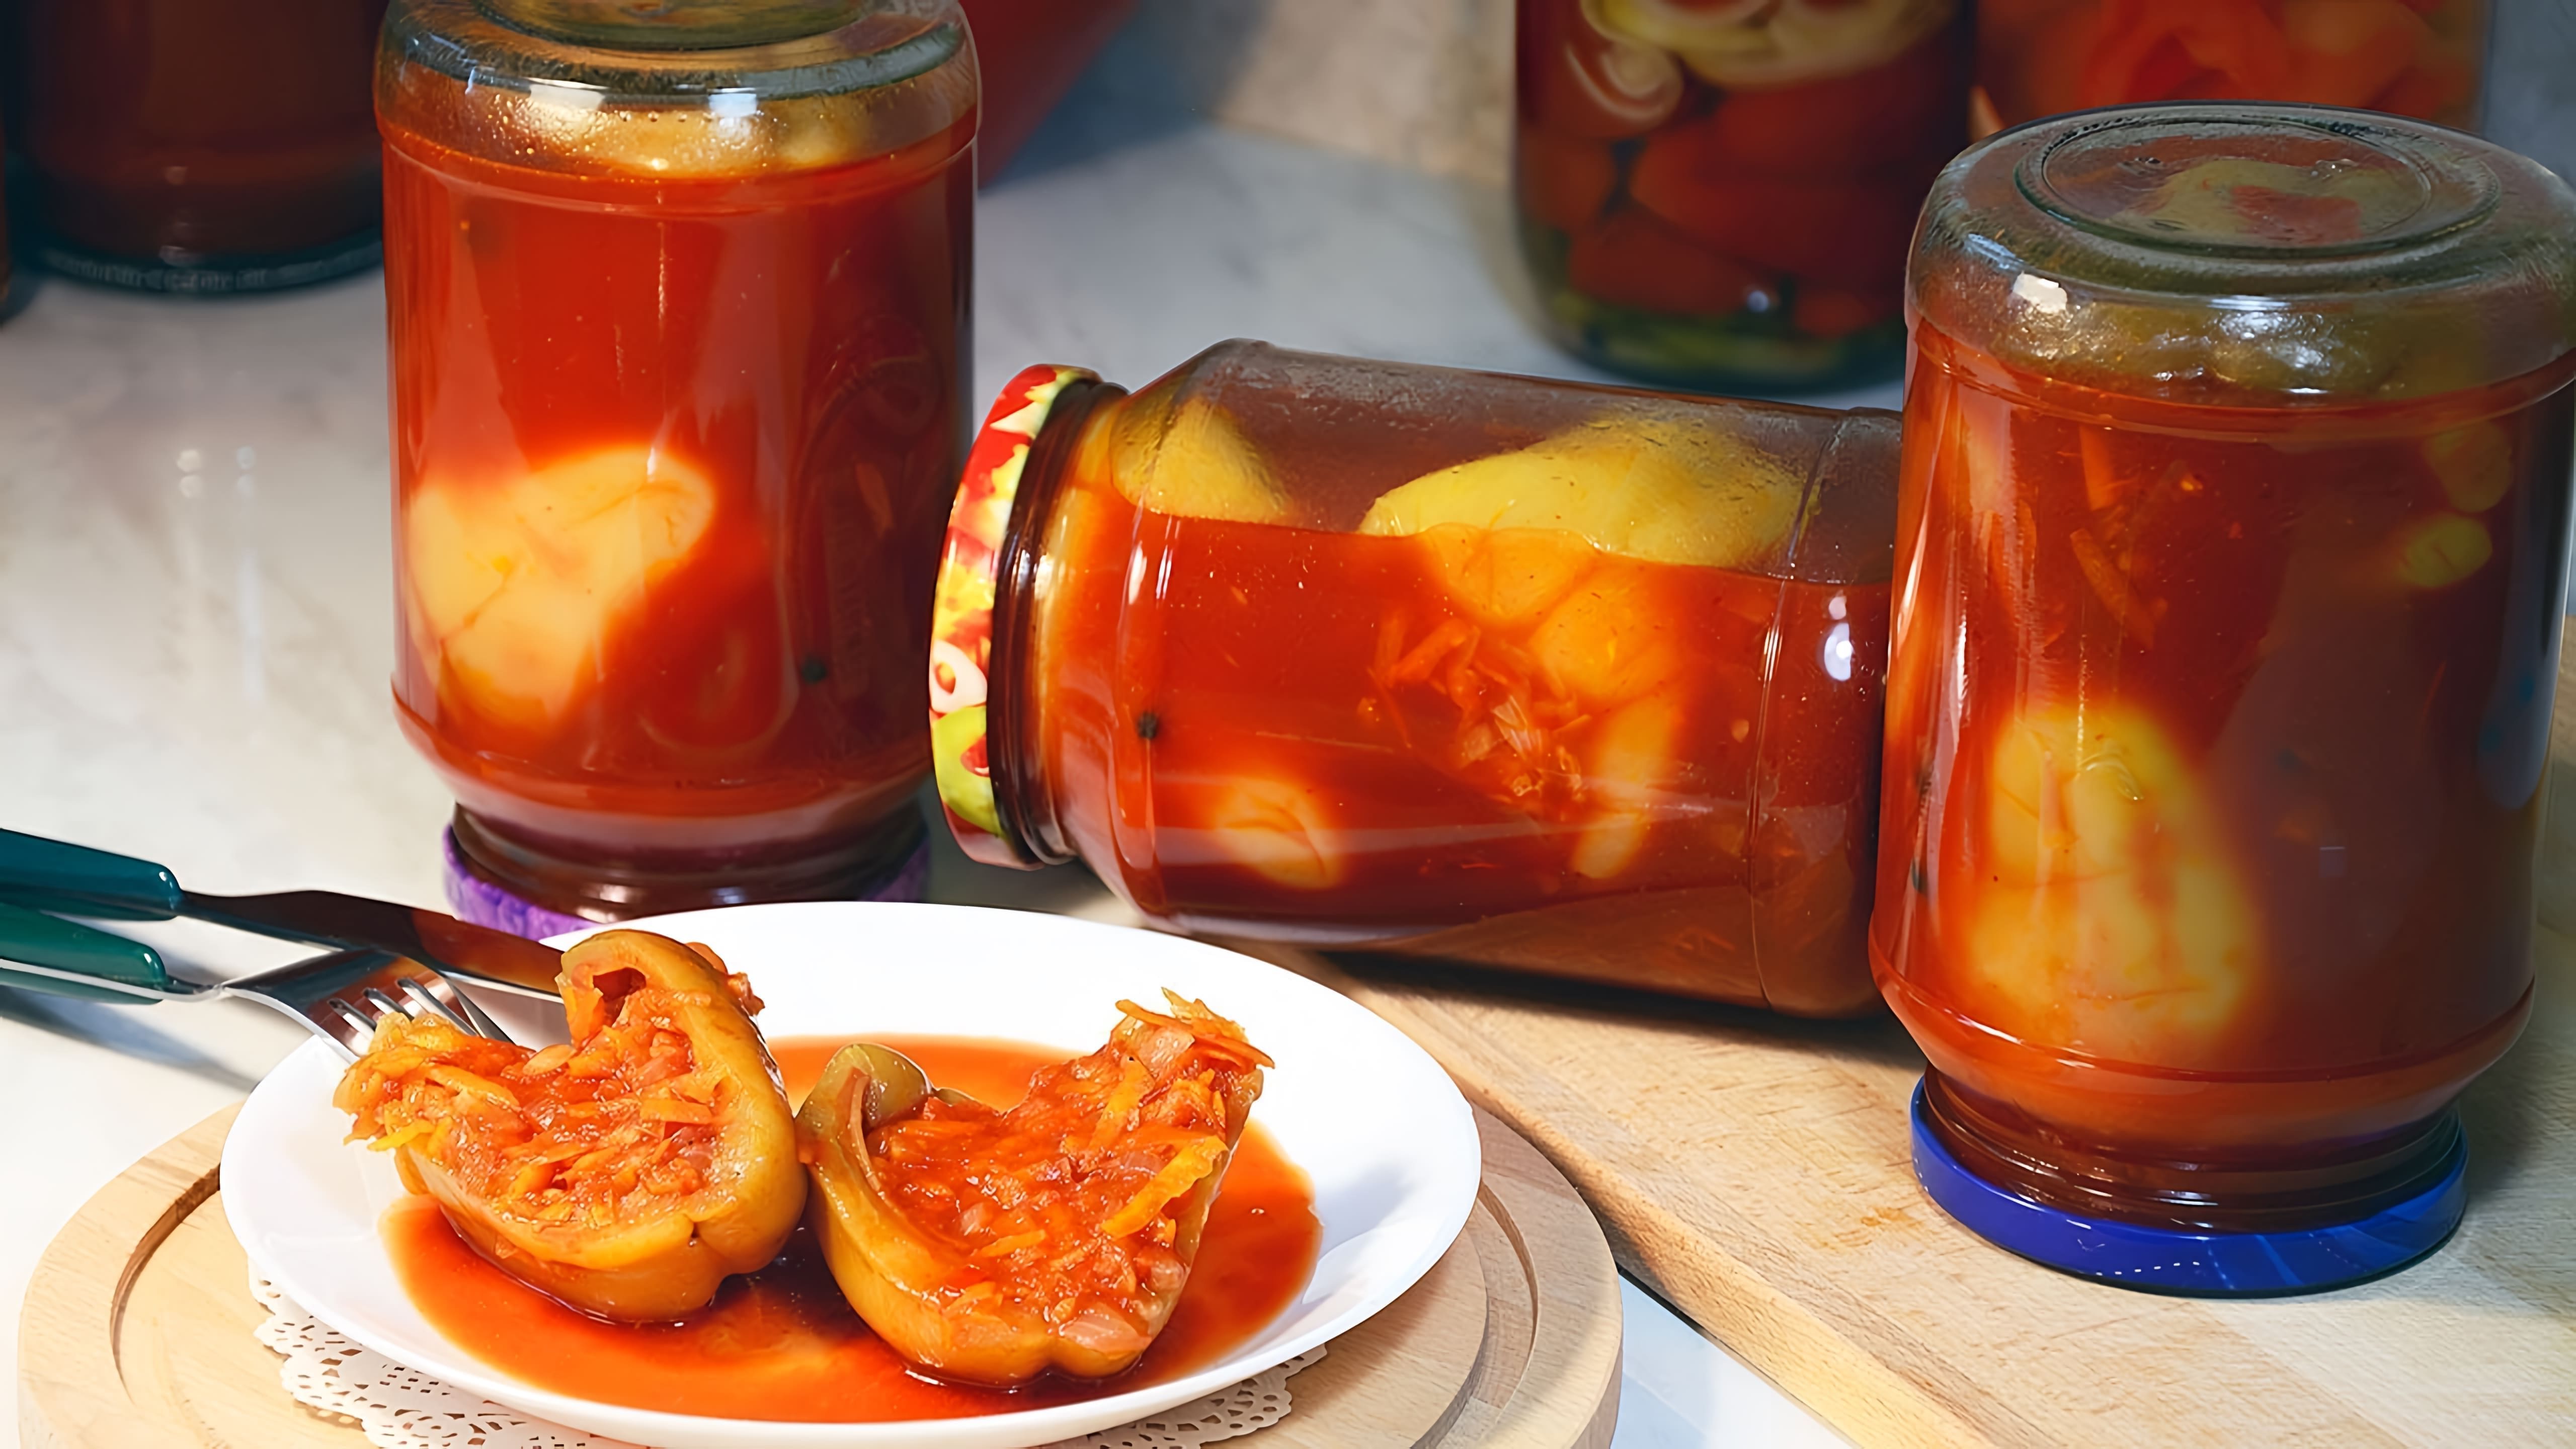 В этом видео демонстрируется рецепт приготовления болгарского перца, фаршированного овощами по-болгарски